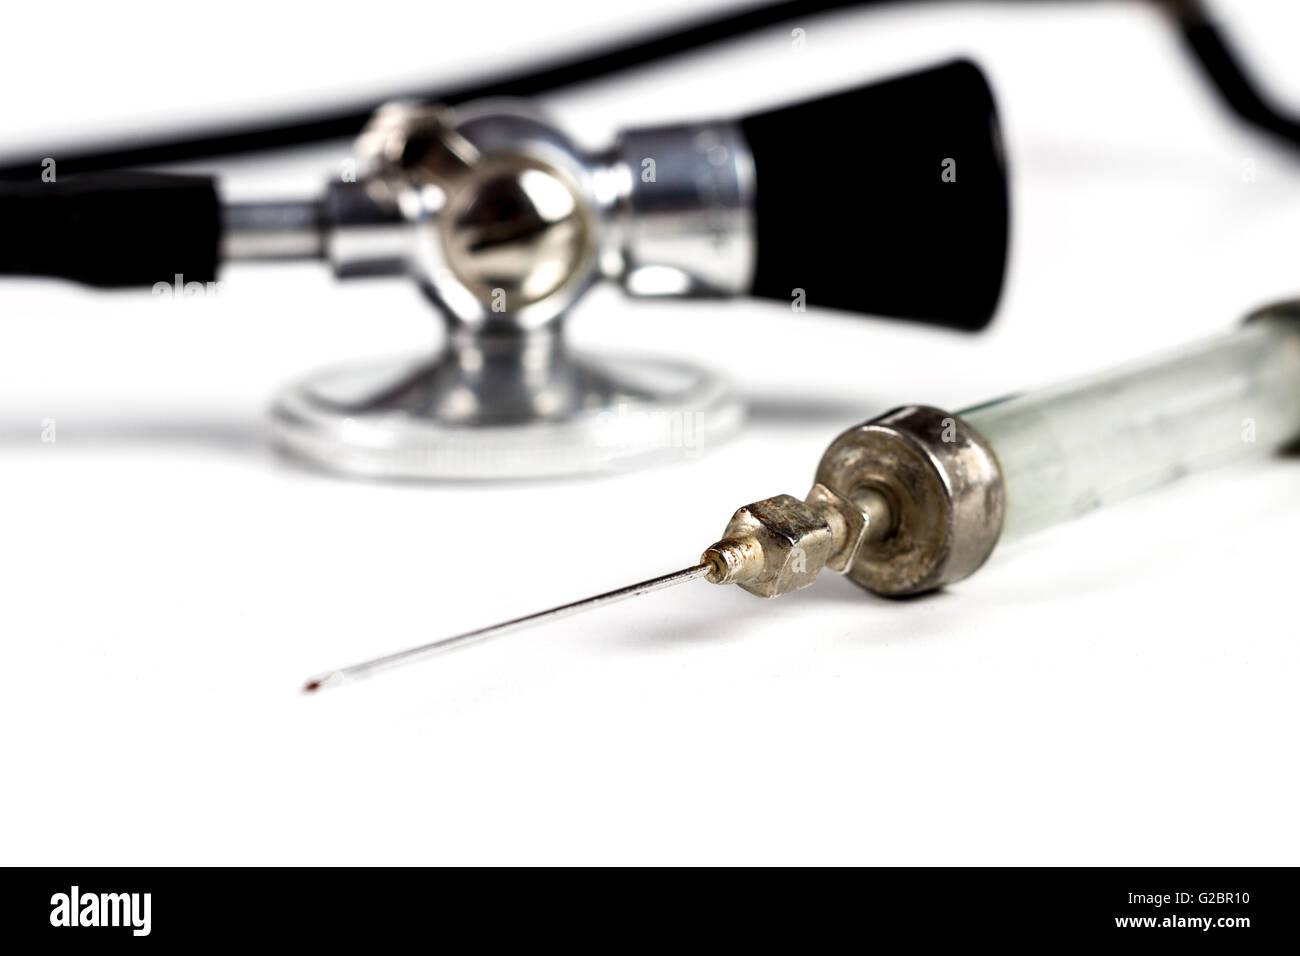 Glass Syringe With Black Old Stethoscope on White Background Stock Photo